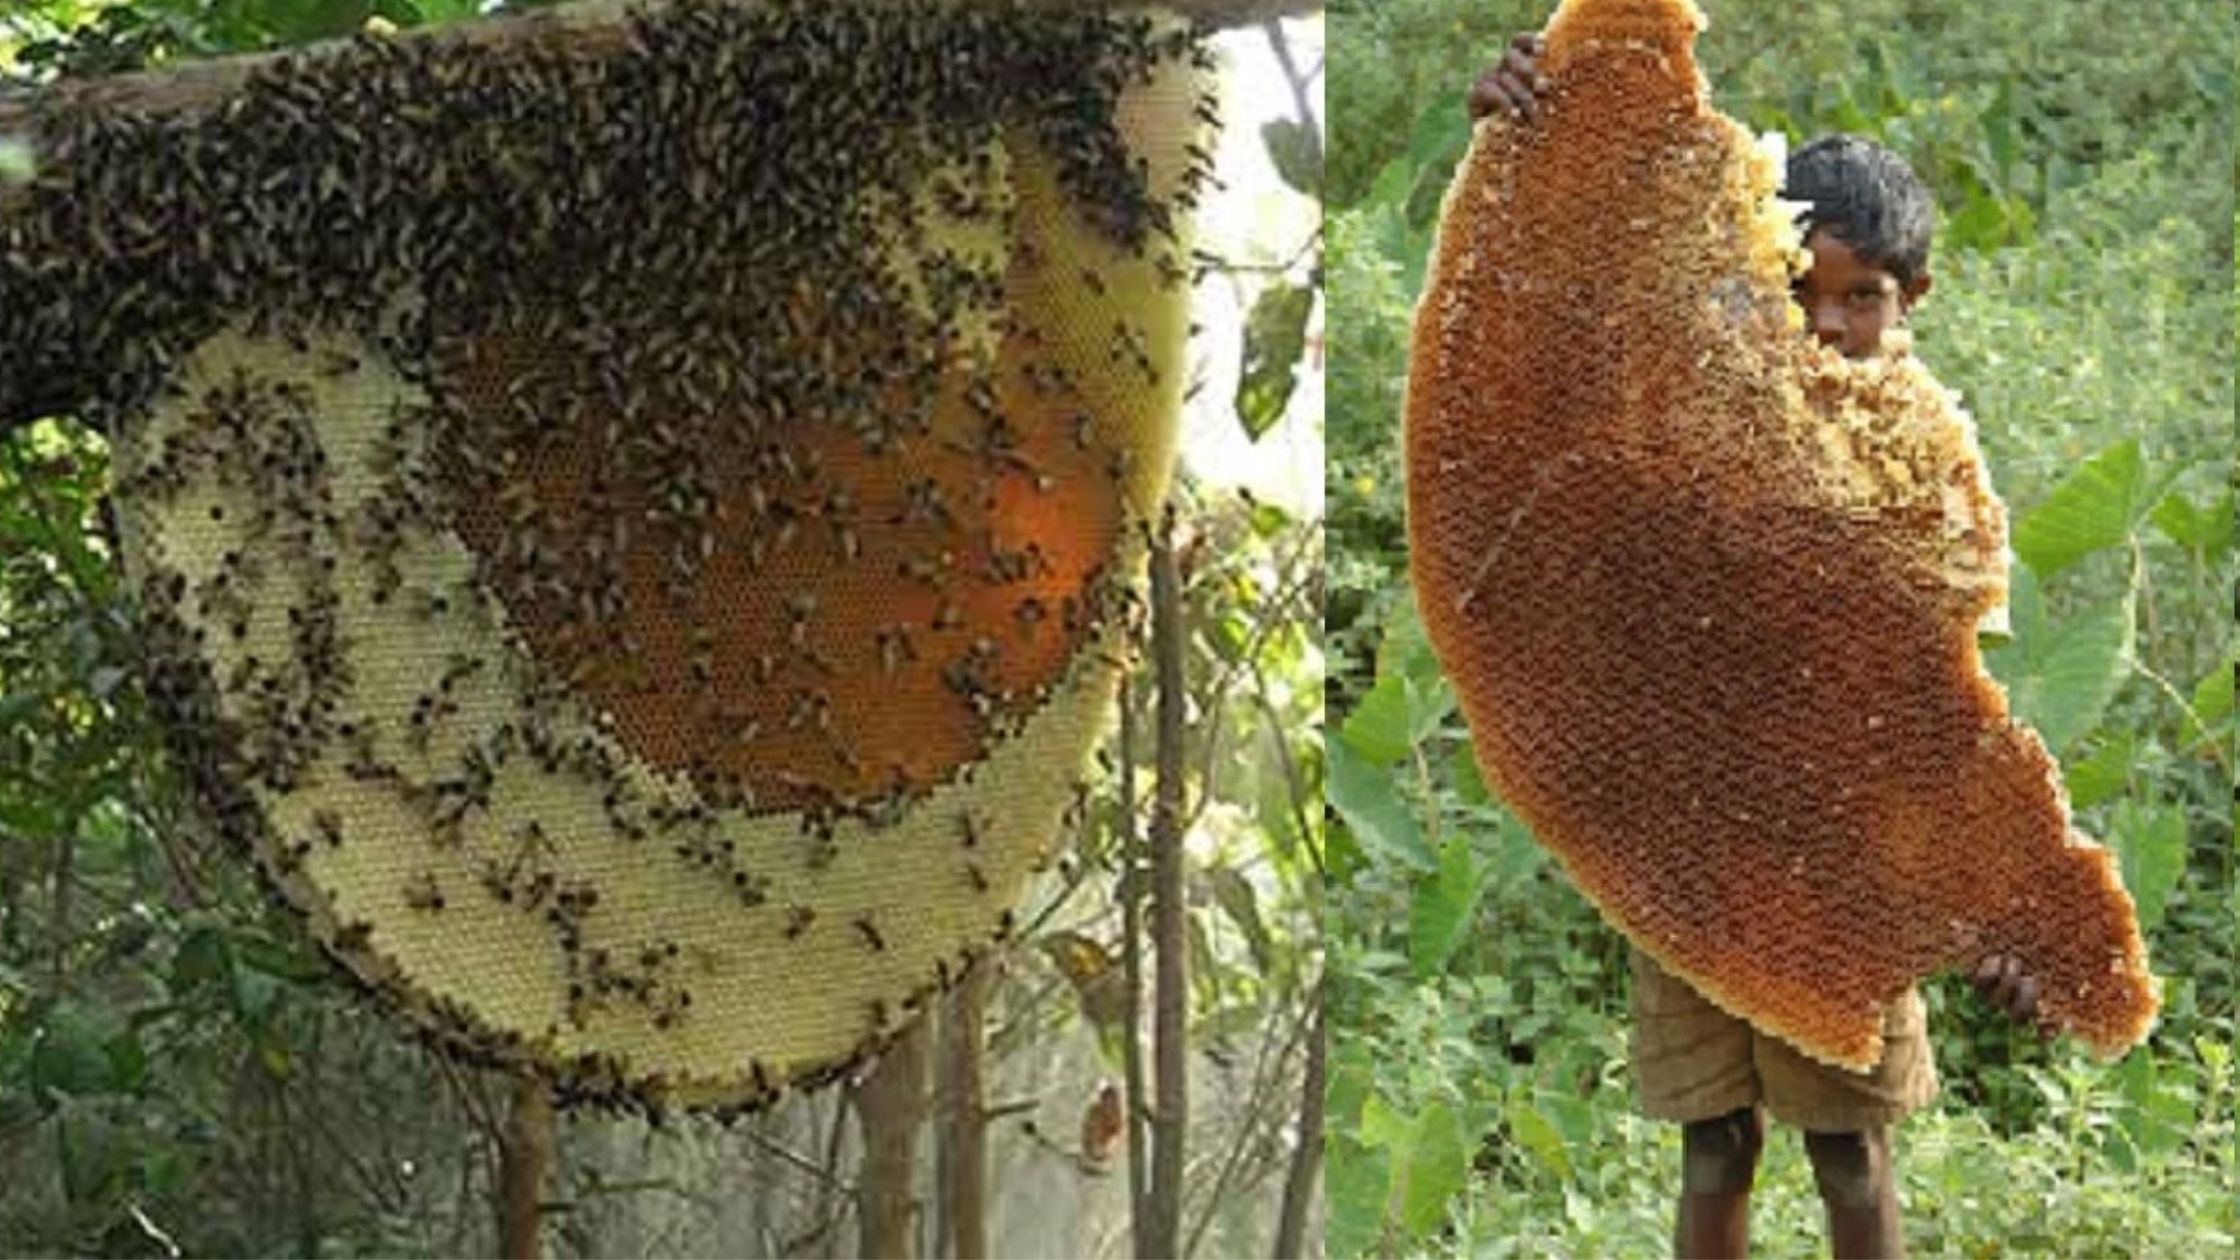 Beekeeping can earn 8 to 10 lakhs